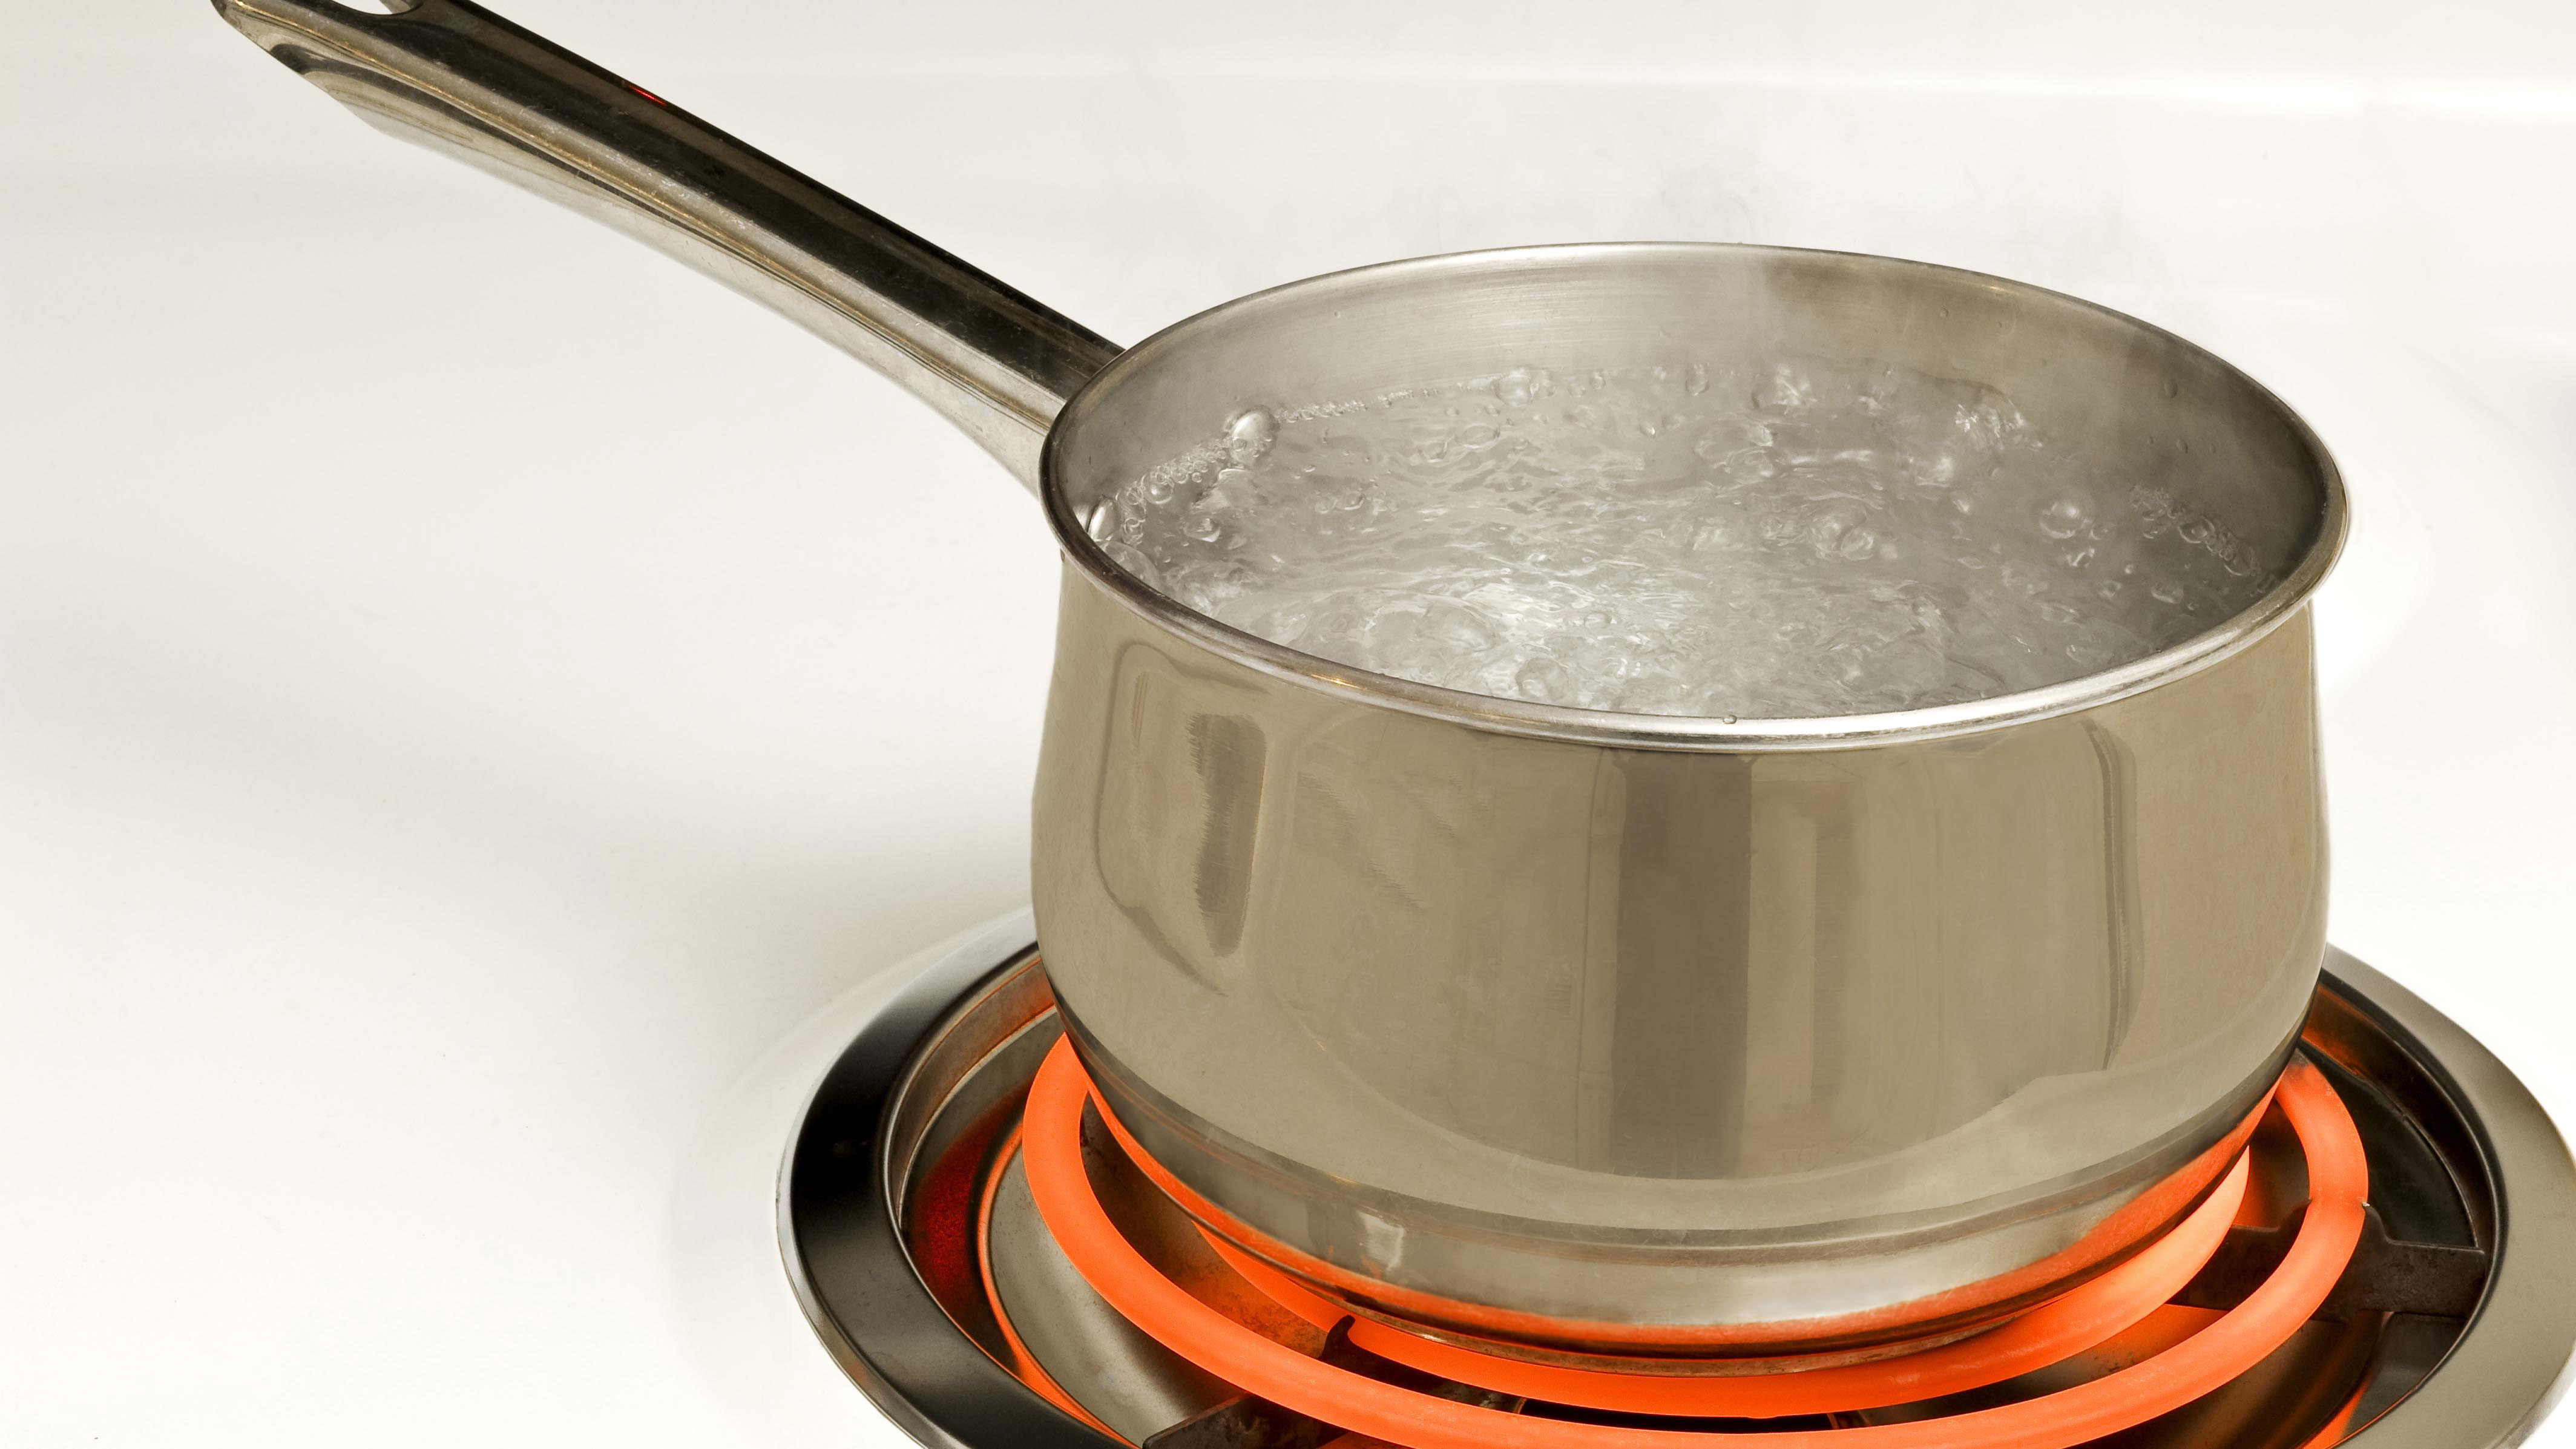 Khử Clo nước máy bằng phương pháp đun sôi nước